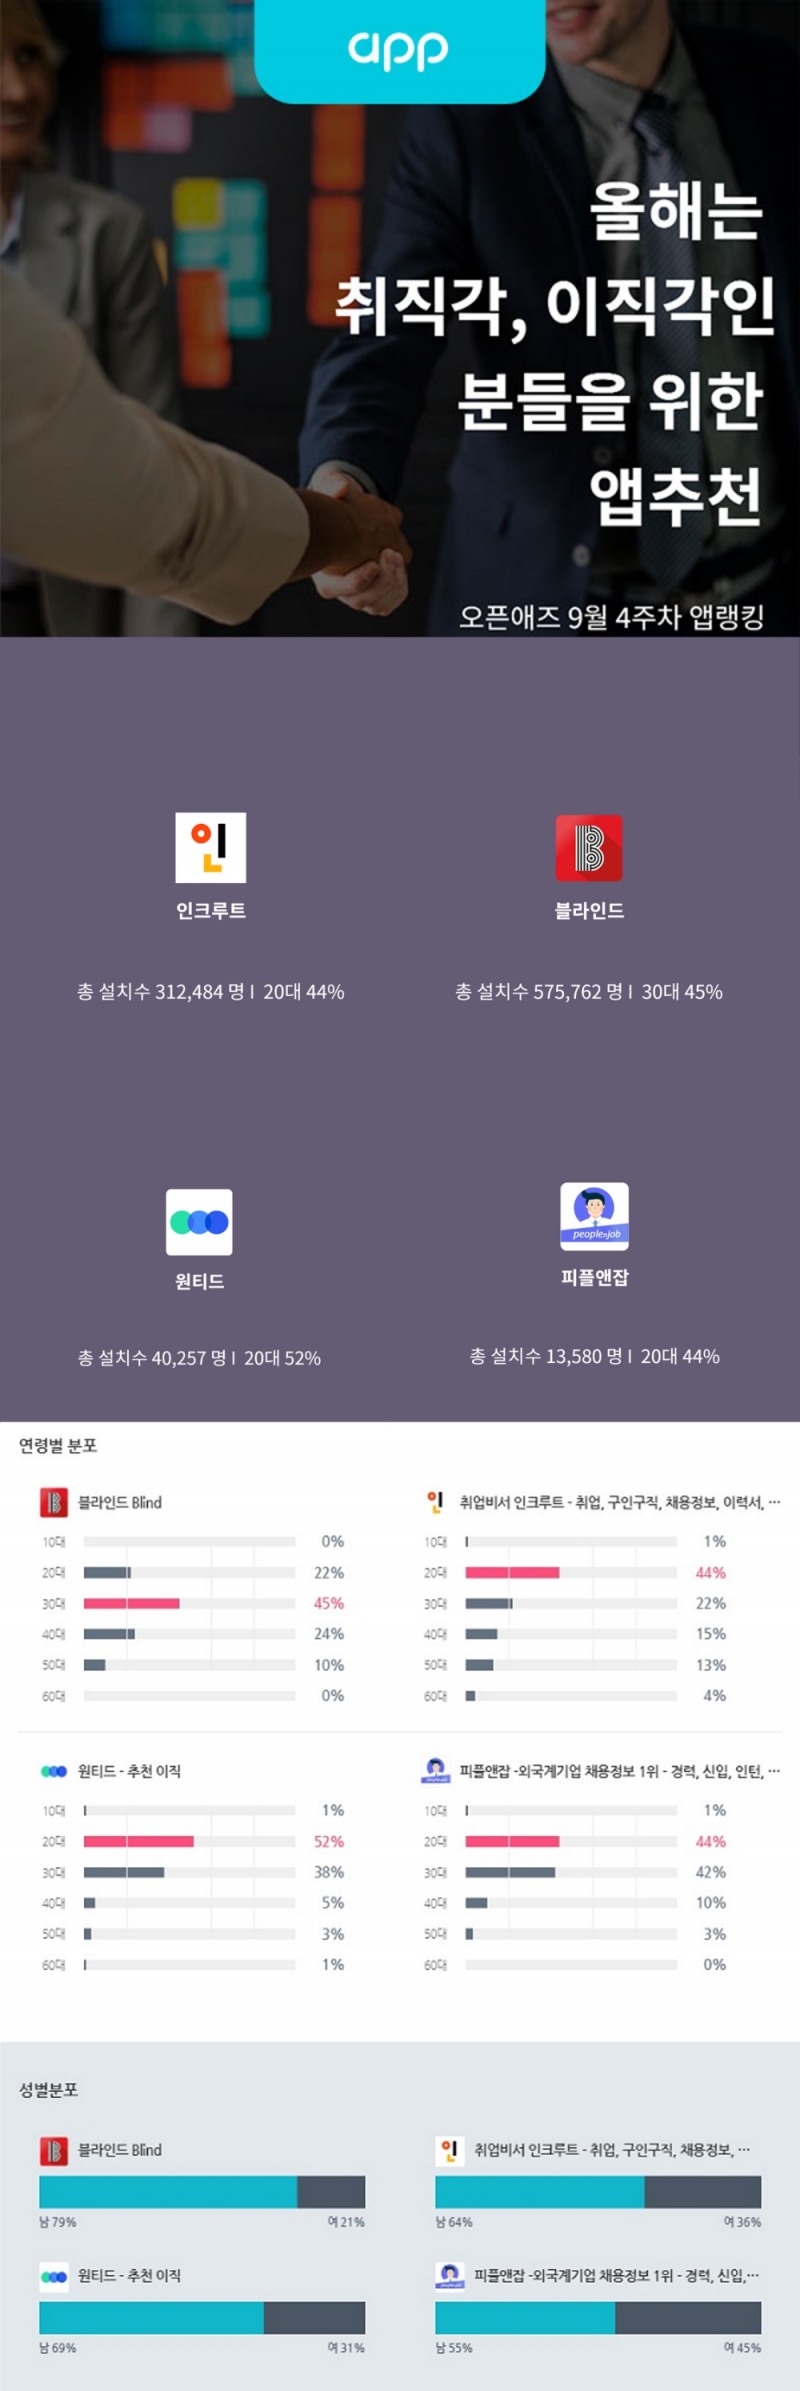 NHN AD '오픈애즈', 채용 앱 트렌드 공개